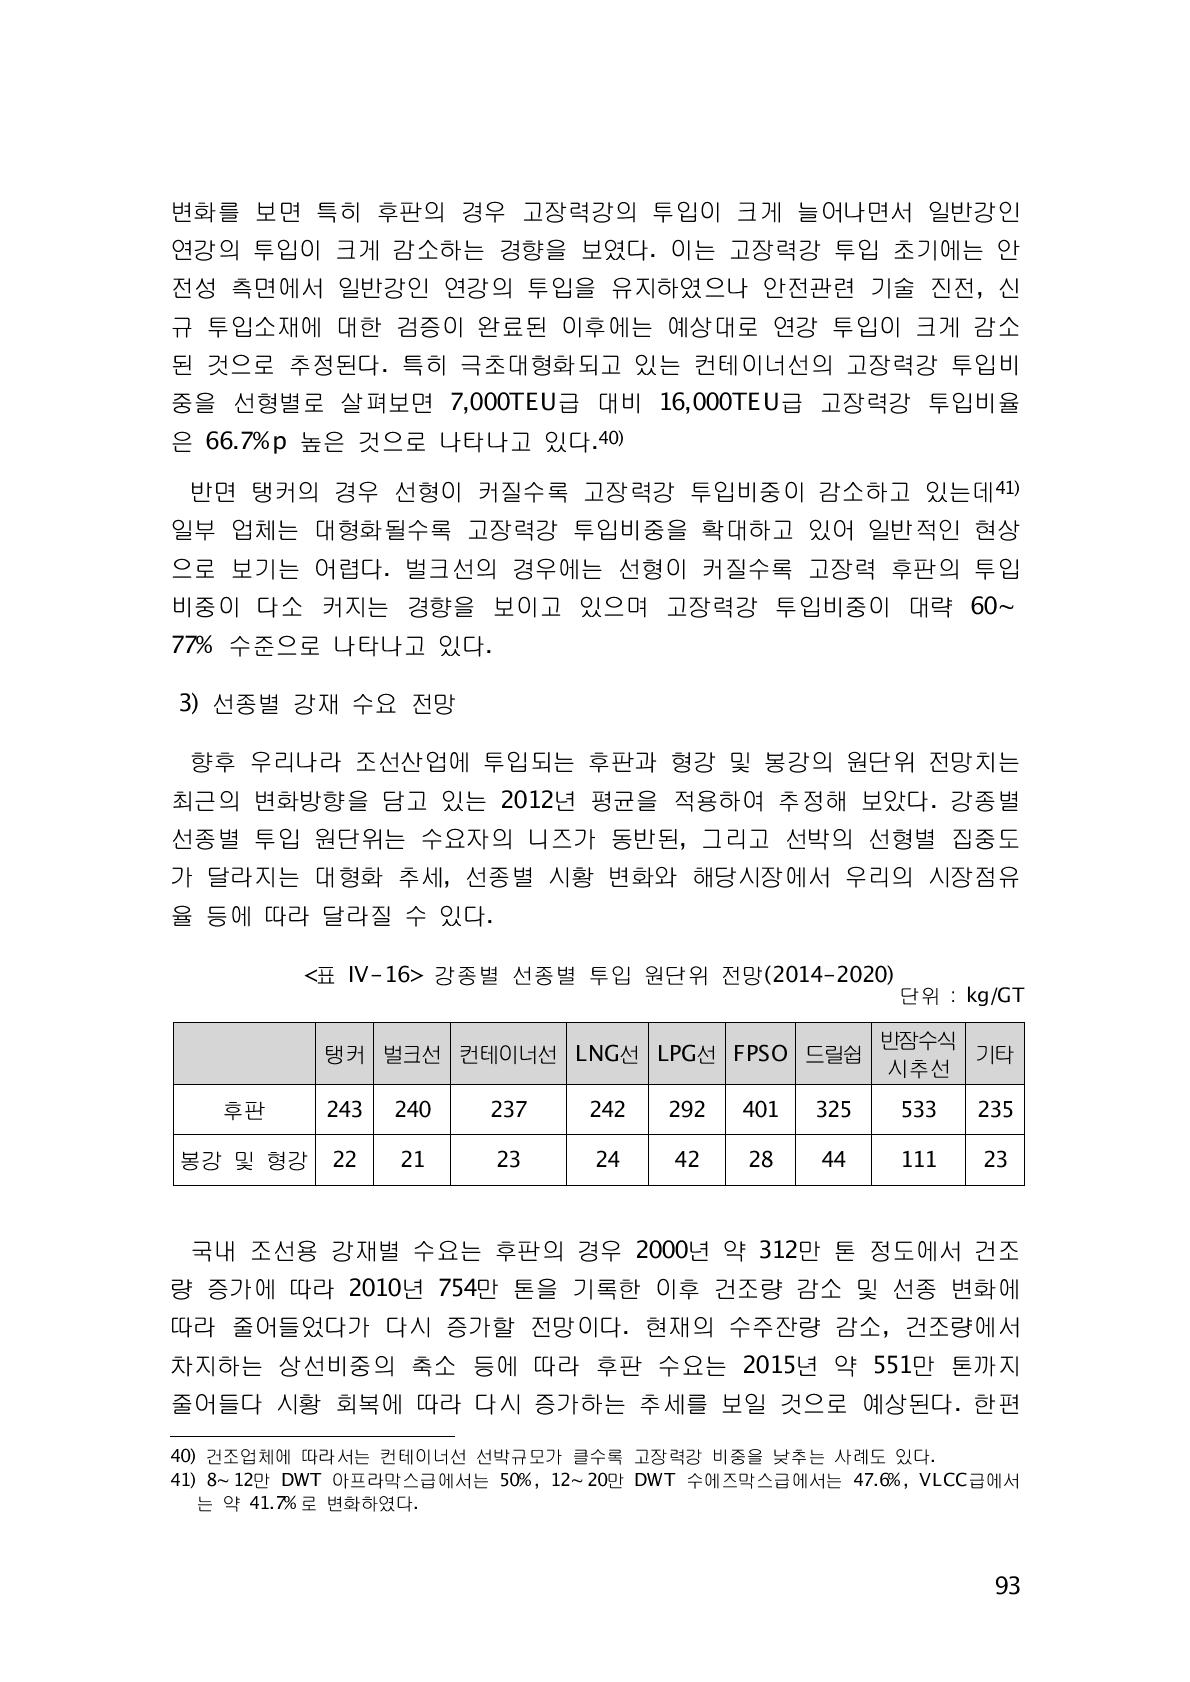 강종별 선종별 투입 원단위 전망(2014-2020)